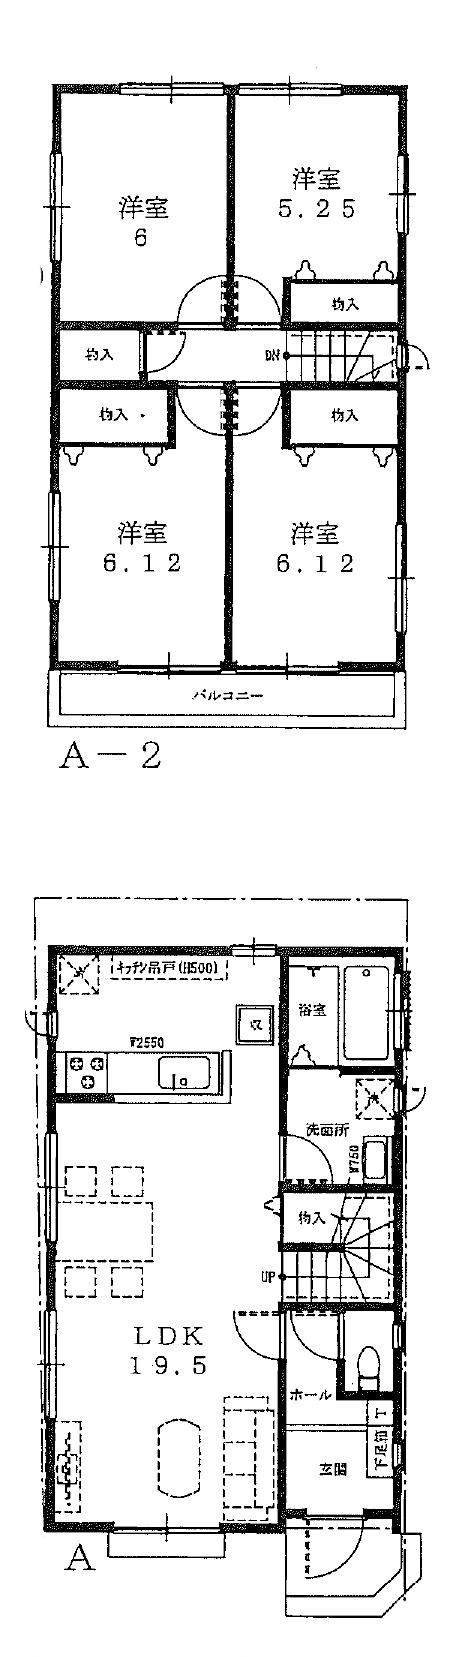 Floor plan. (A Building), Price 21,800,000 yen, 4LDK, Land area 132.3 sq m , Building area 96.46 sq m